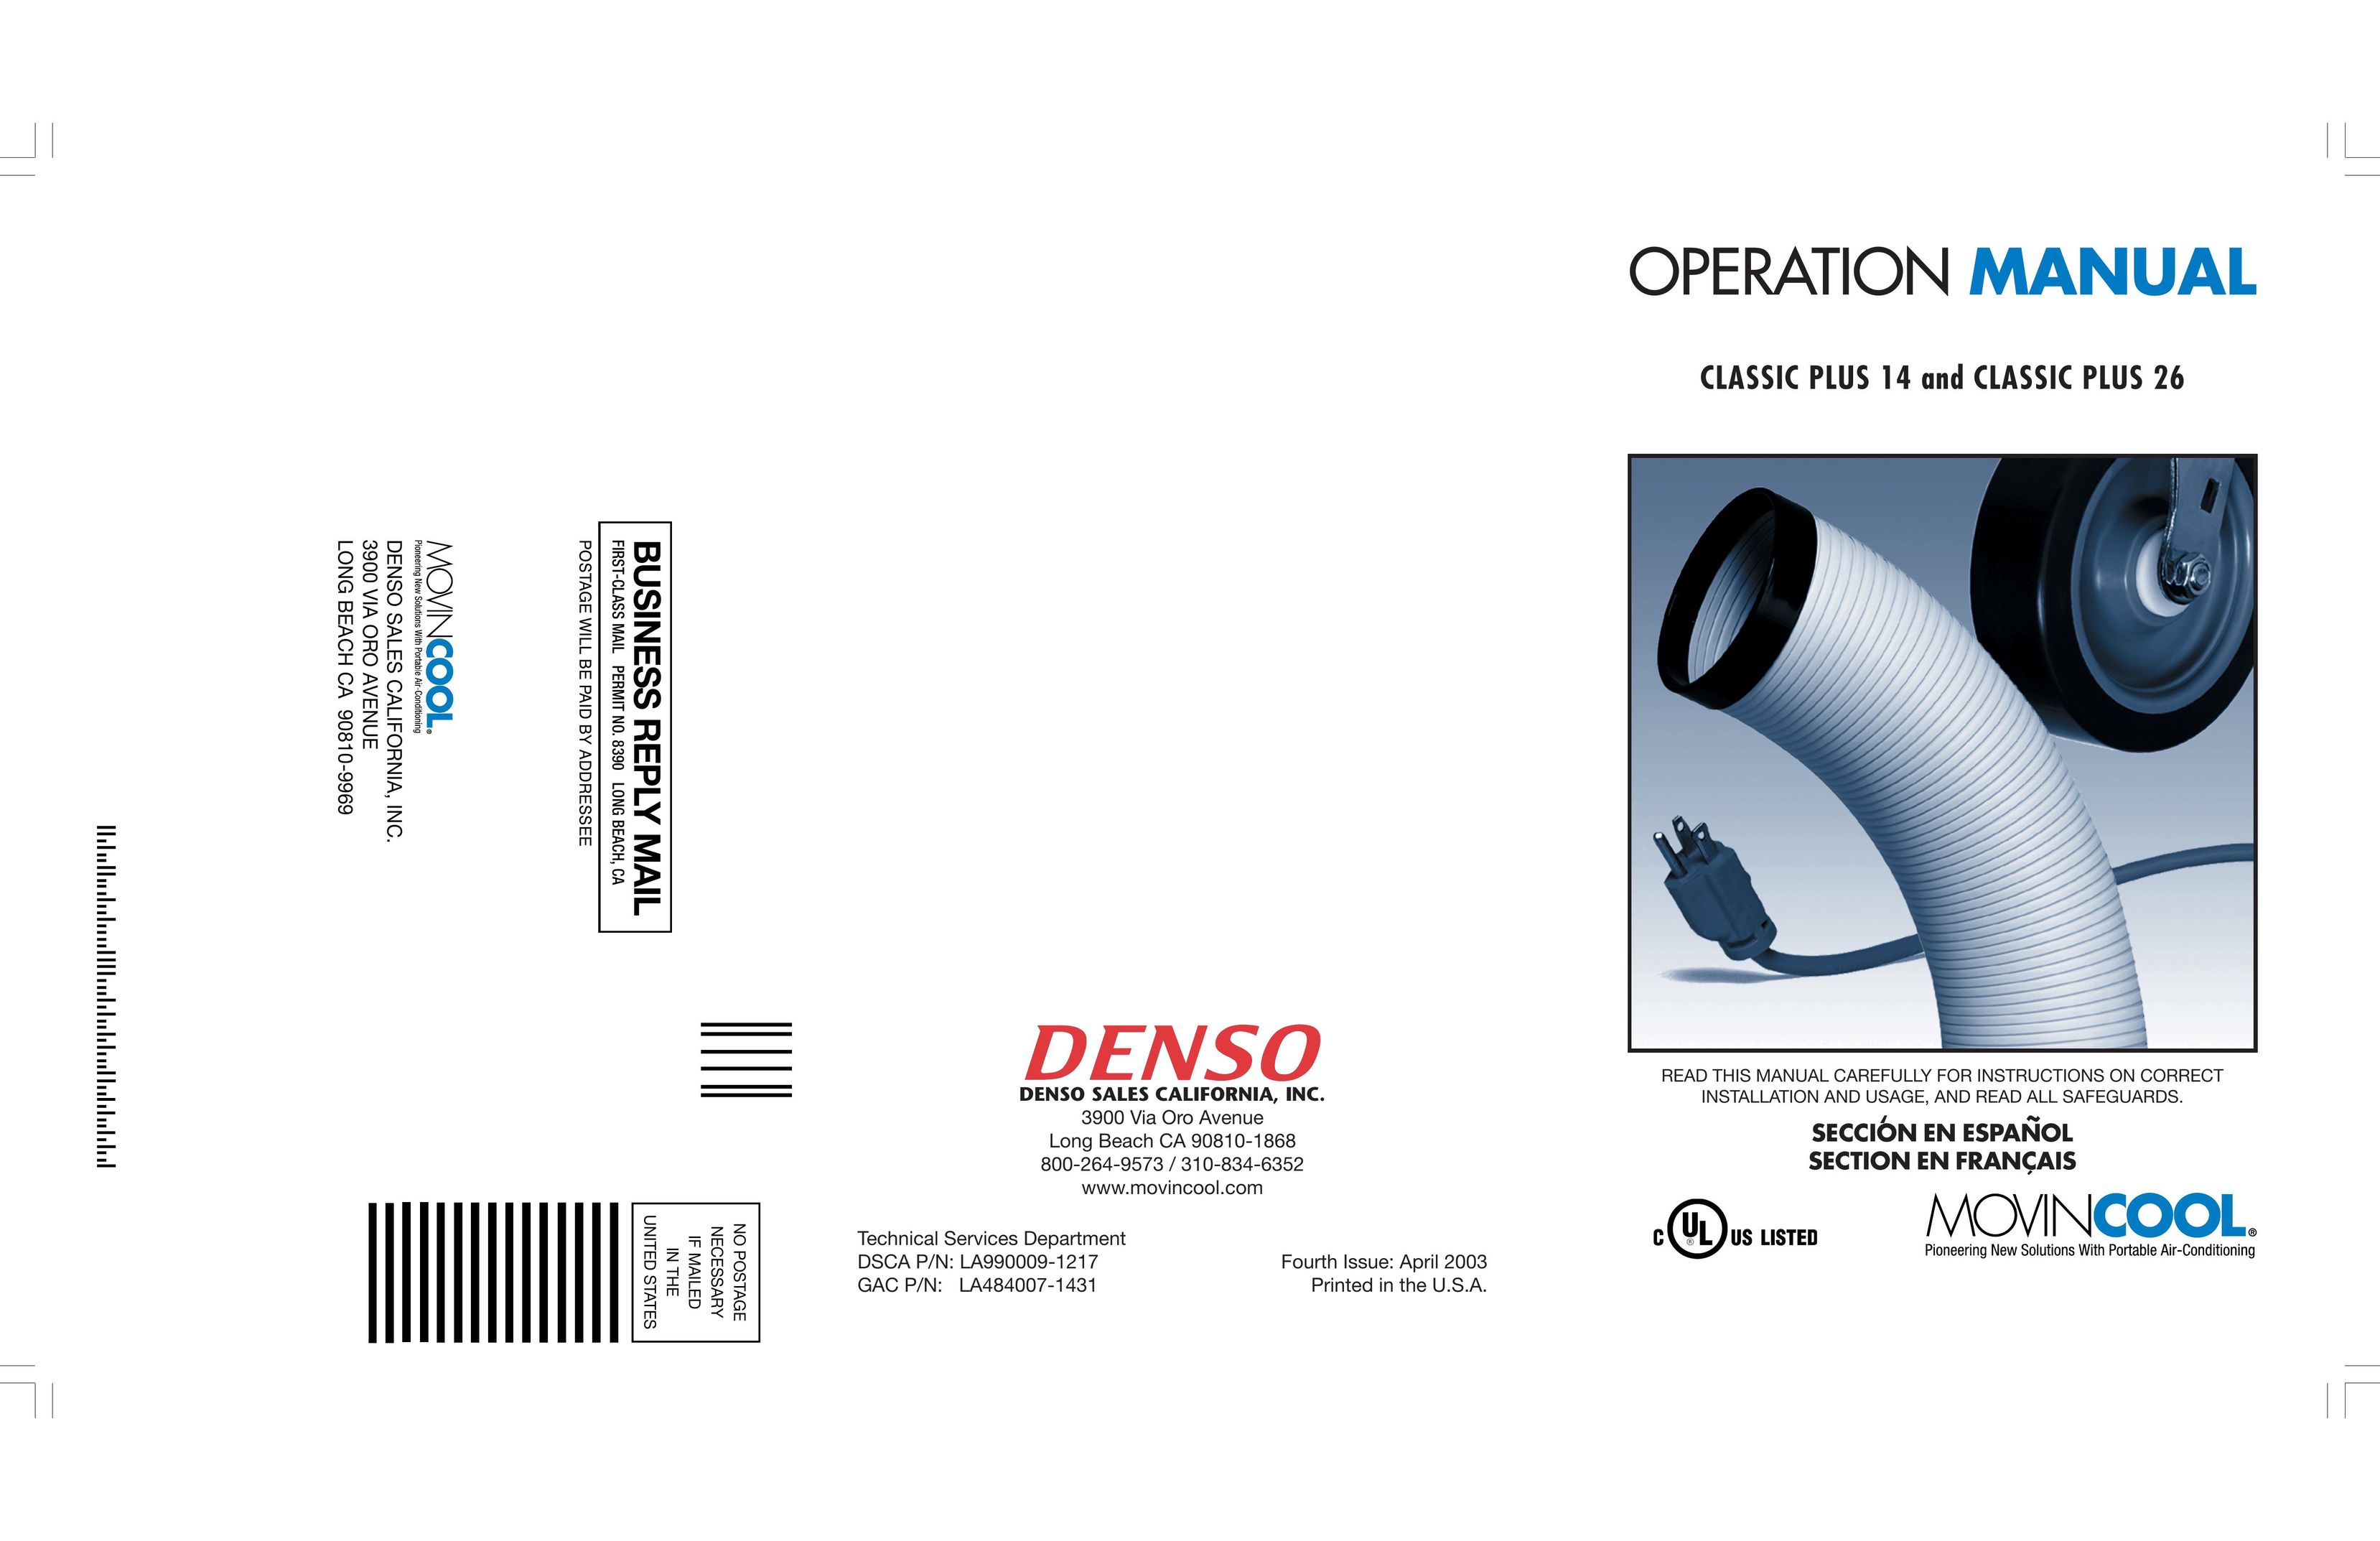 Denso CLASSIC PLUS 14 Air Conditioner User Manual